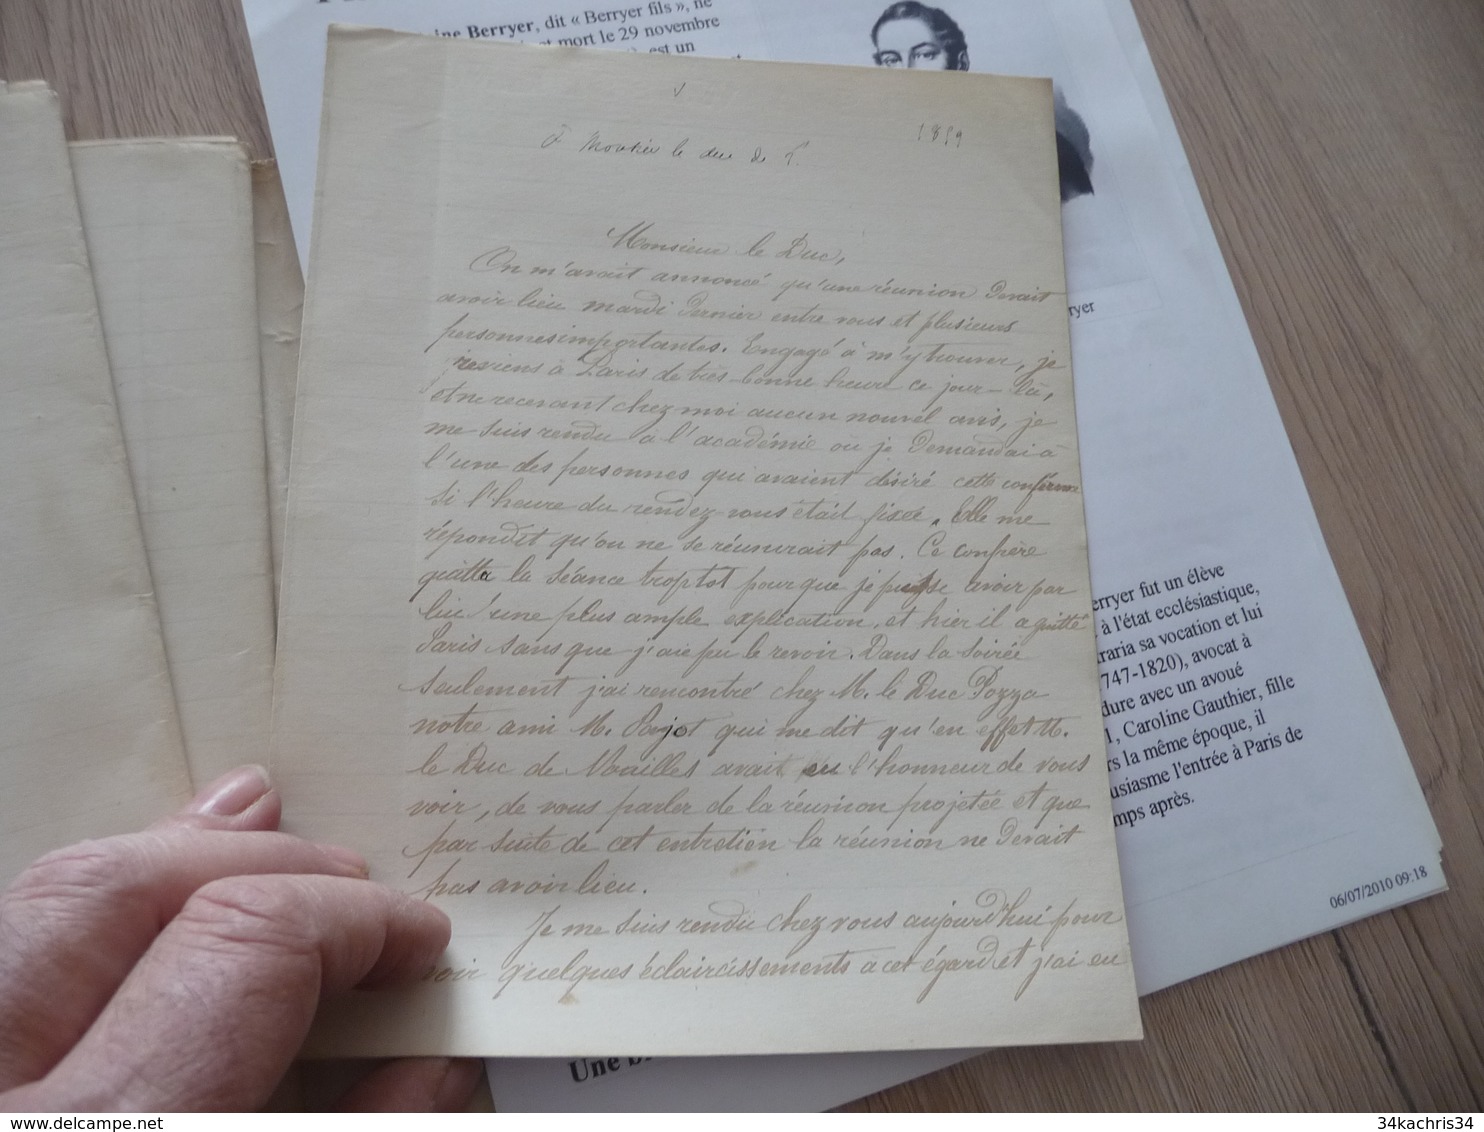 Pierre Antoine Berryer Avocat politique légitimiste Manuscrit signé de 27 pages lettres corrigées à des personnalités